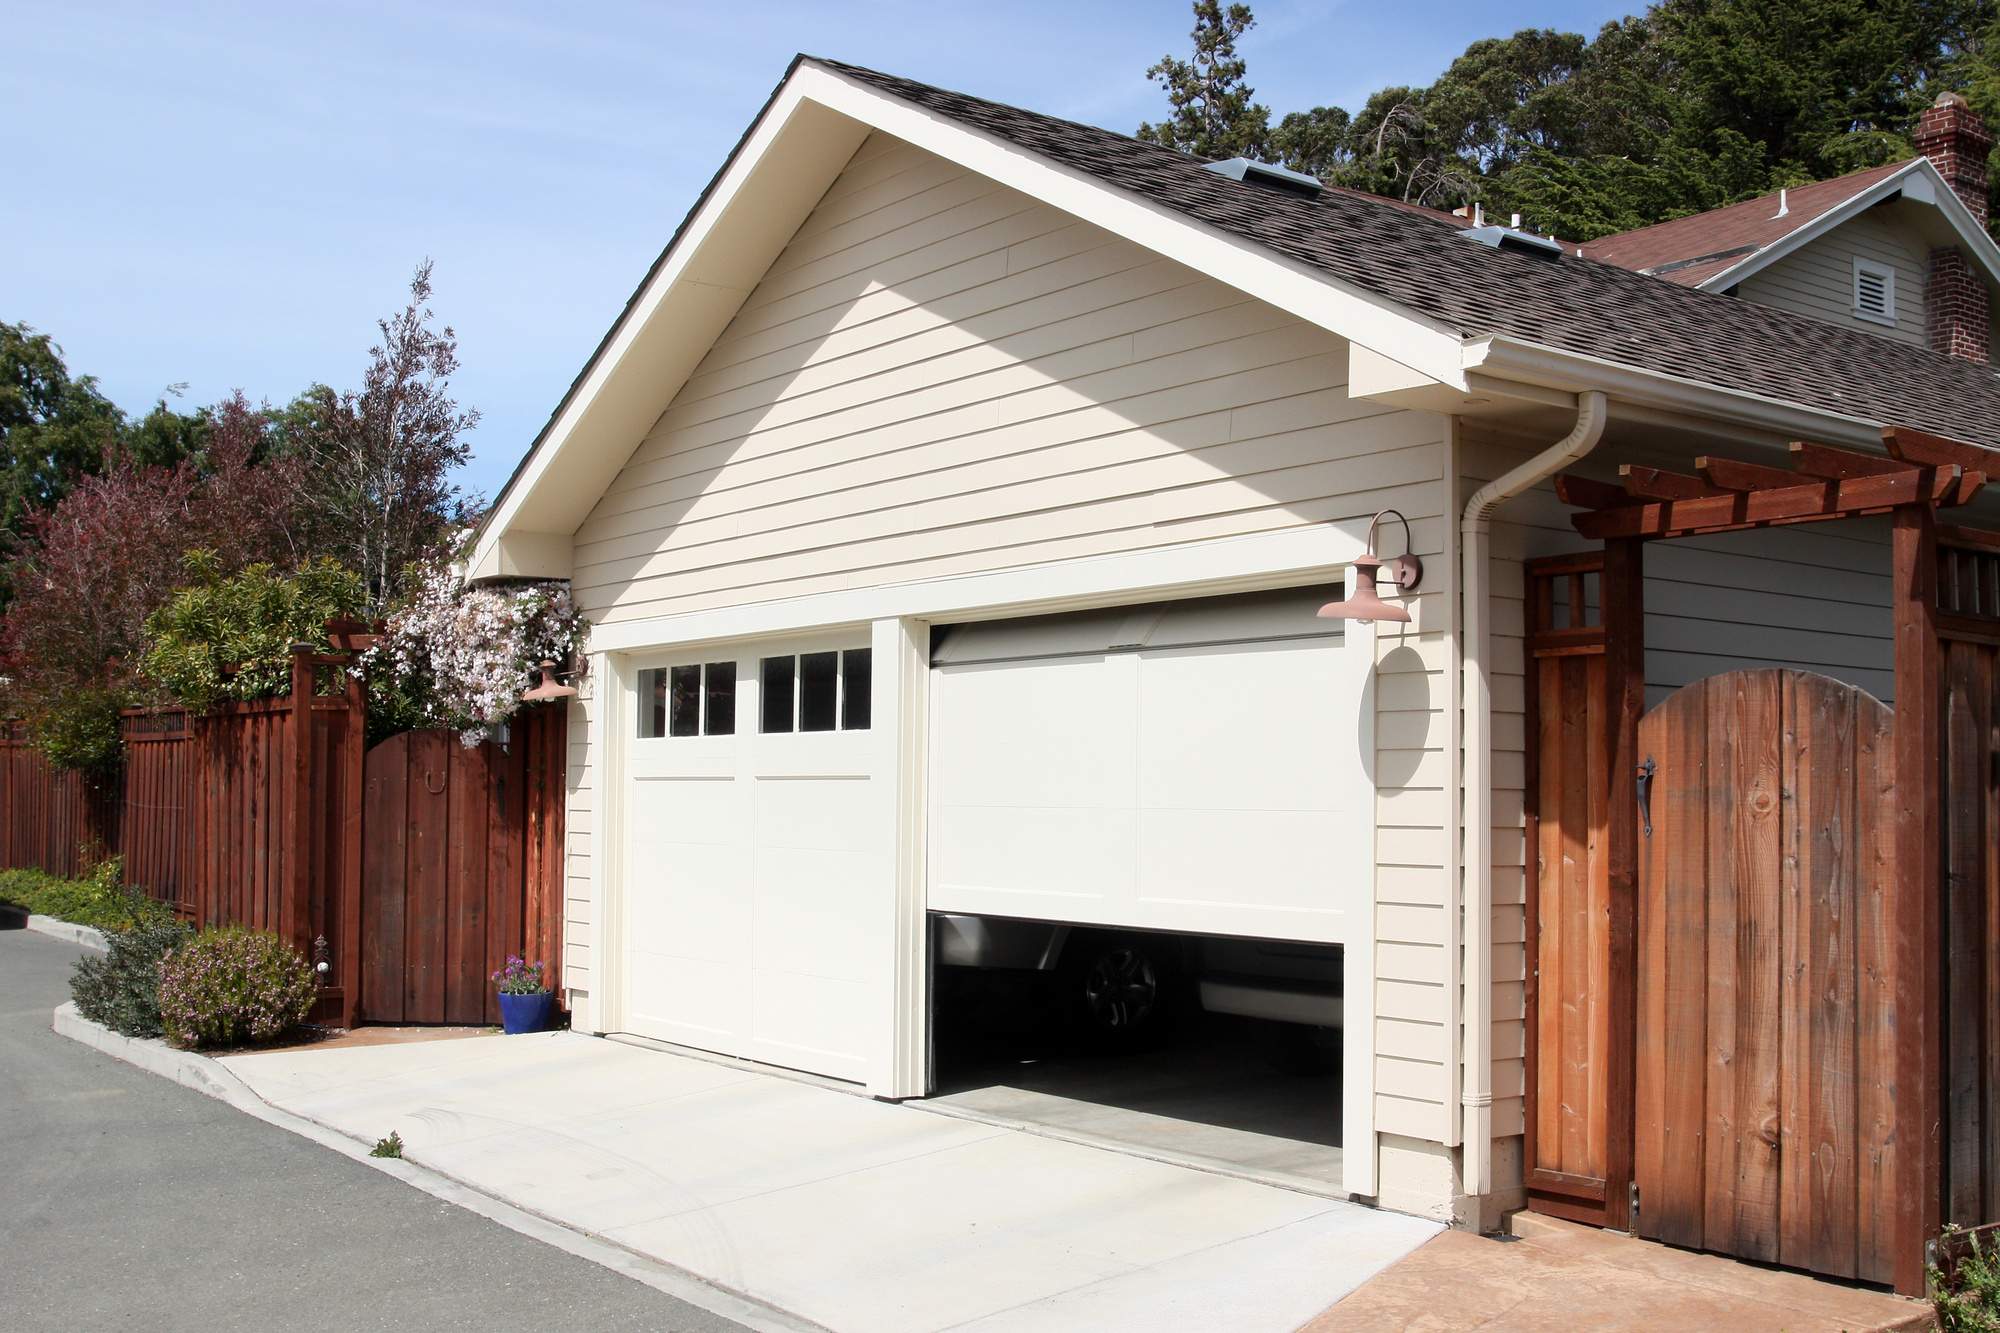 5 Sure Signs You Need Garage Door Repair